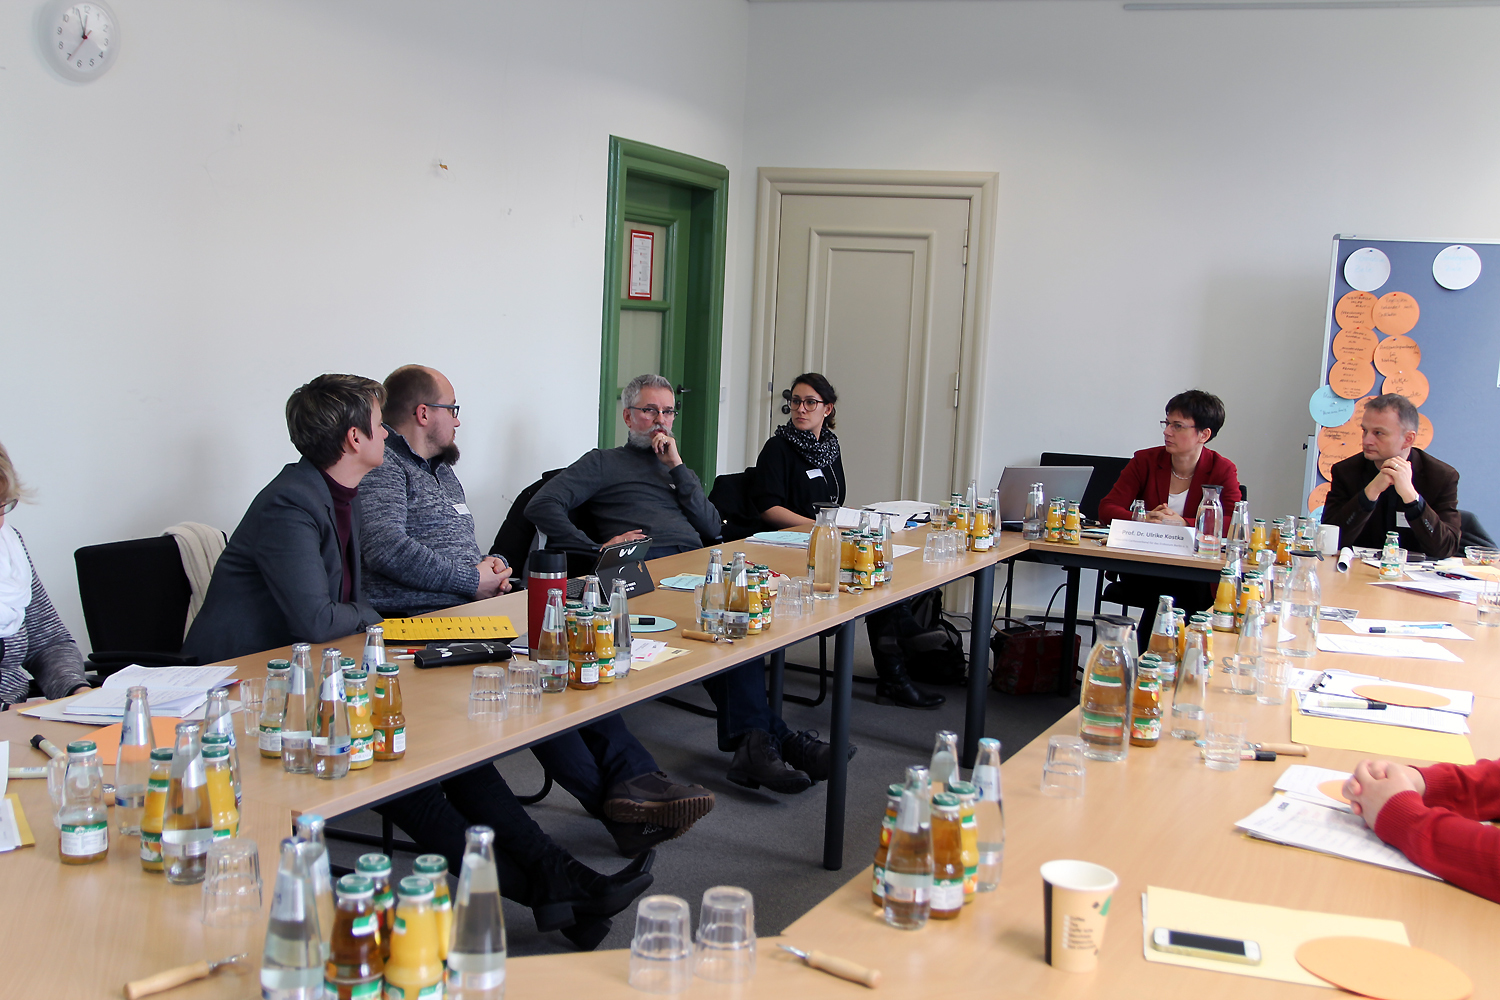 Sitzung der Arbeitsgruppe 4 "Medizinische Versorgung – Suchthilfe – Psychiatrie" auf der 1. Berliner Strategiekonferenz zur Wohnungslosenhilfe am 10. Januar 2018